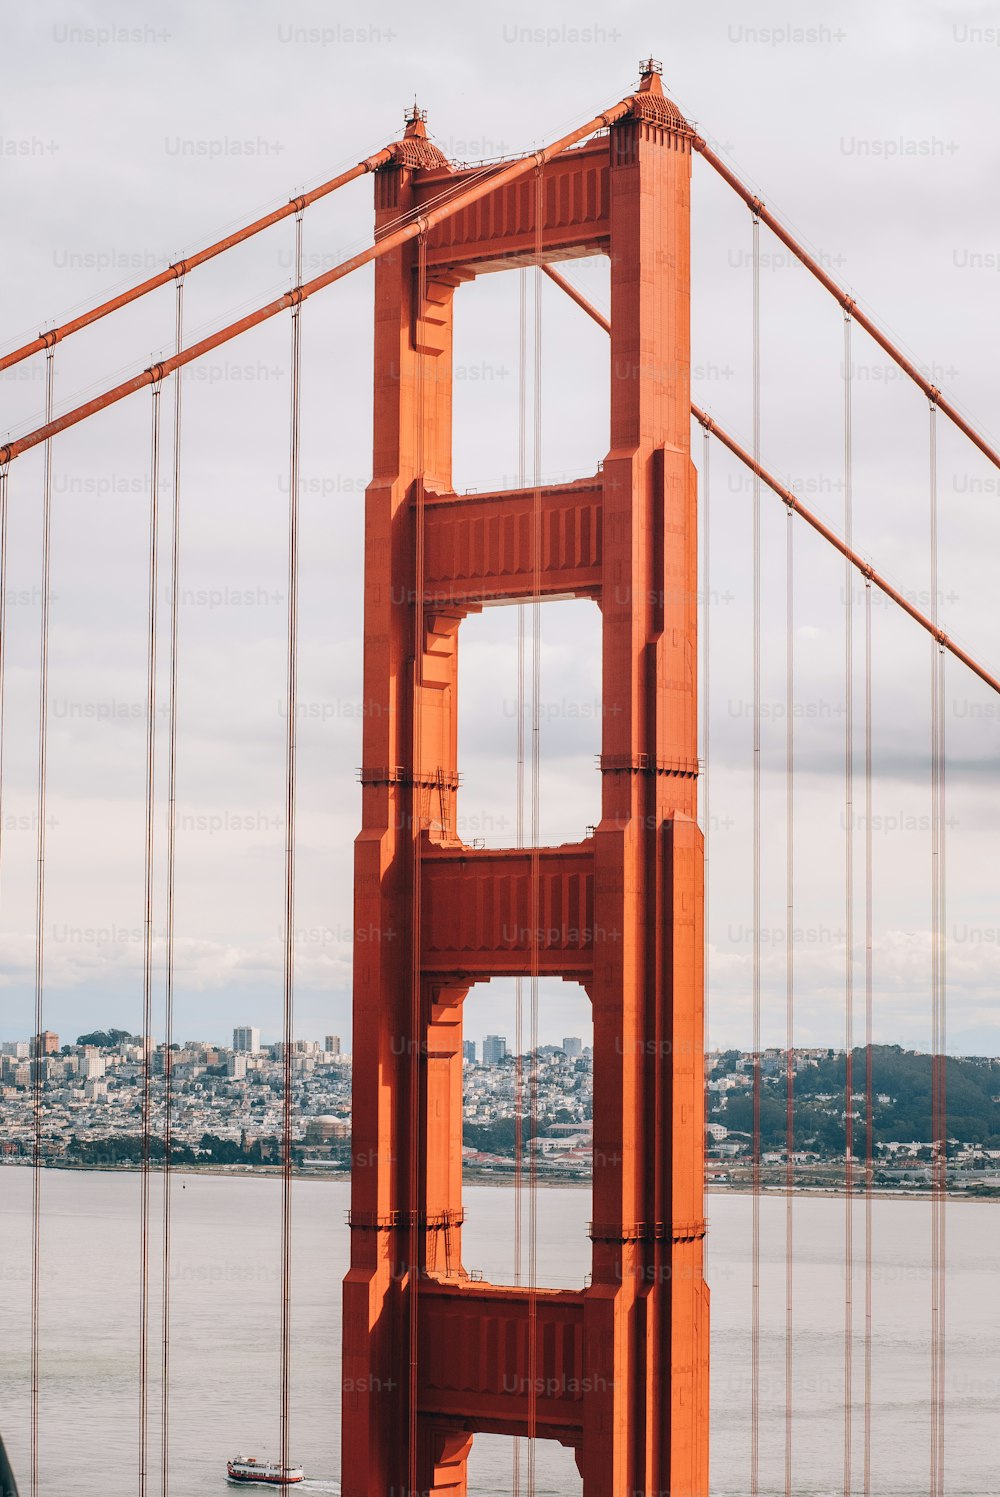 Una vista del puente Golden Gate en San Francisco, California